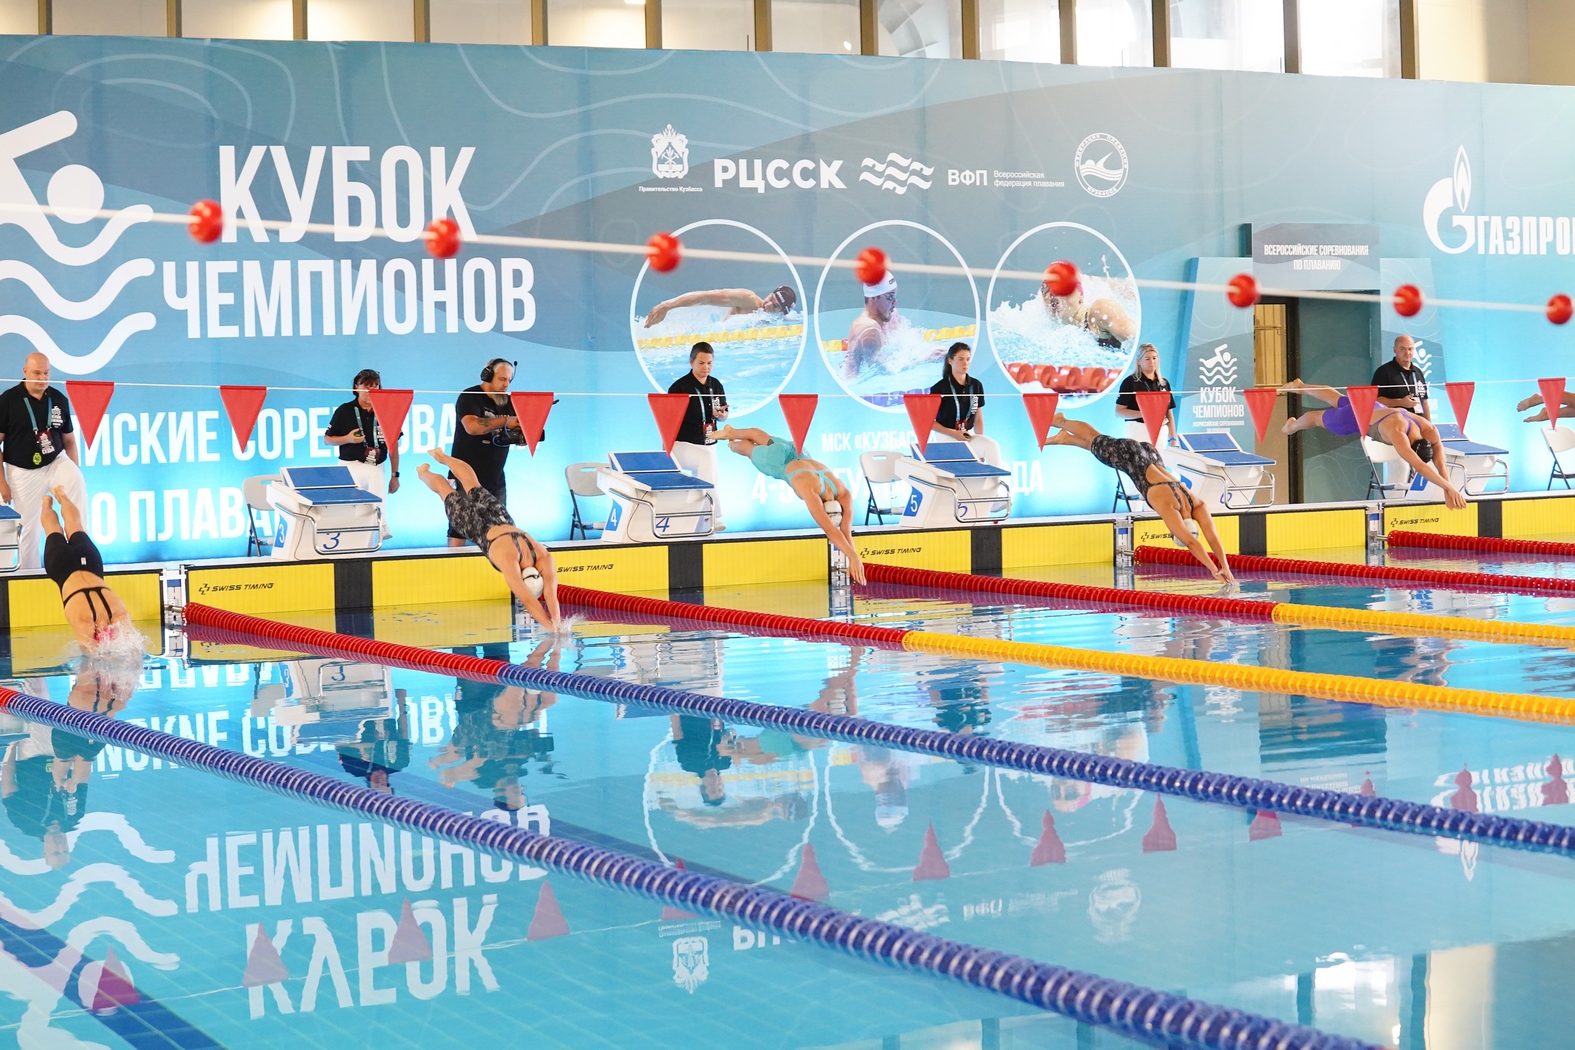 В Кузбассе впервые проходят Всероссийские соревнования по плаванию «Кубок чемпионов»